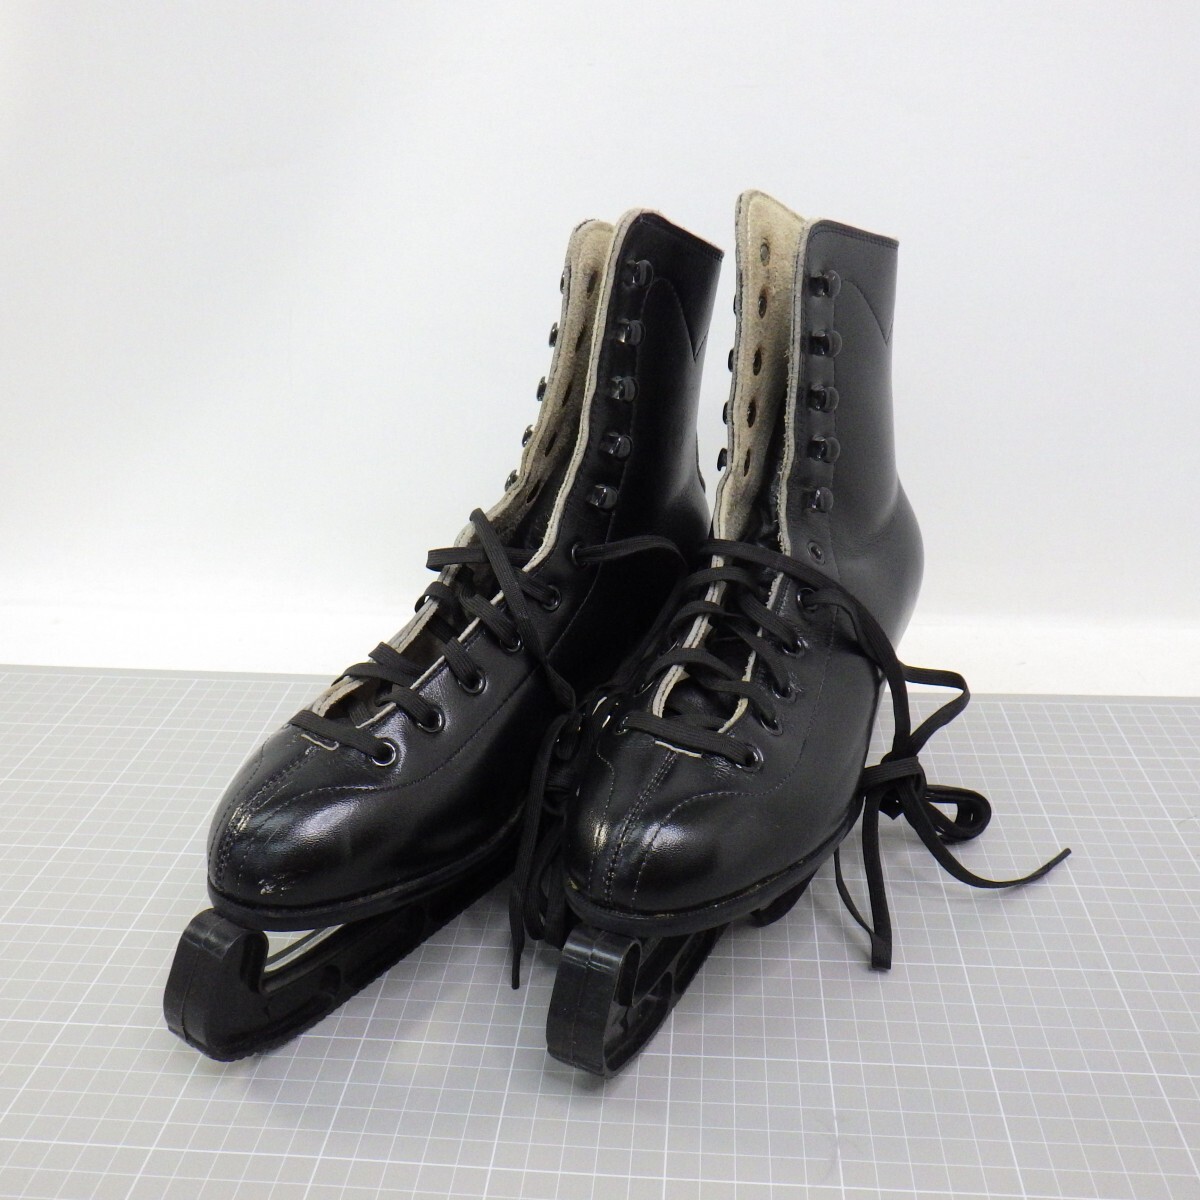 スケートシューズ PLAYER サイズ 23.5cm/エッジカバー付き/フィギュアスケートアイススケート 靴/黒 ブラック 80の画像1